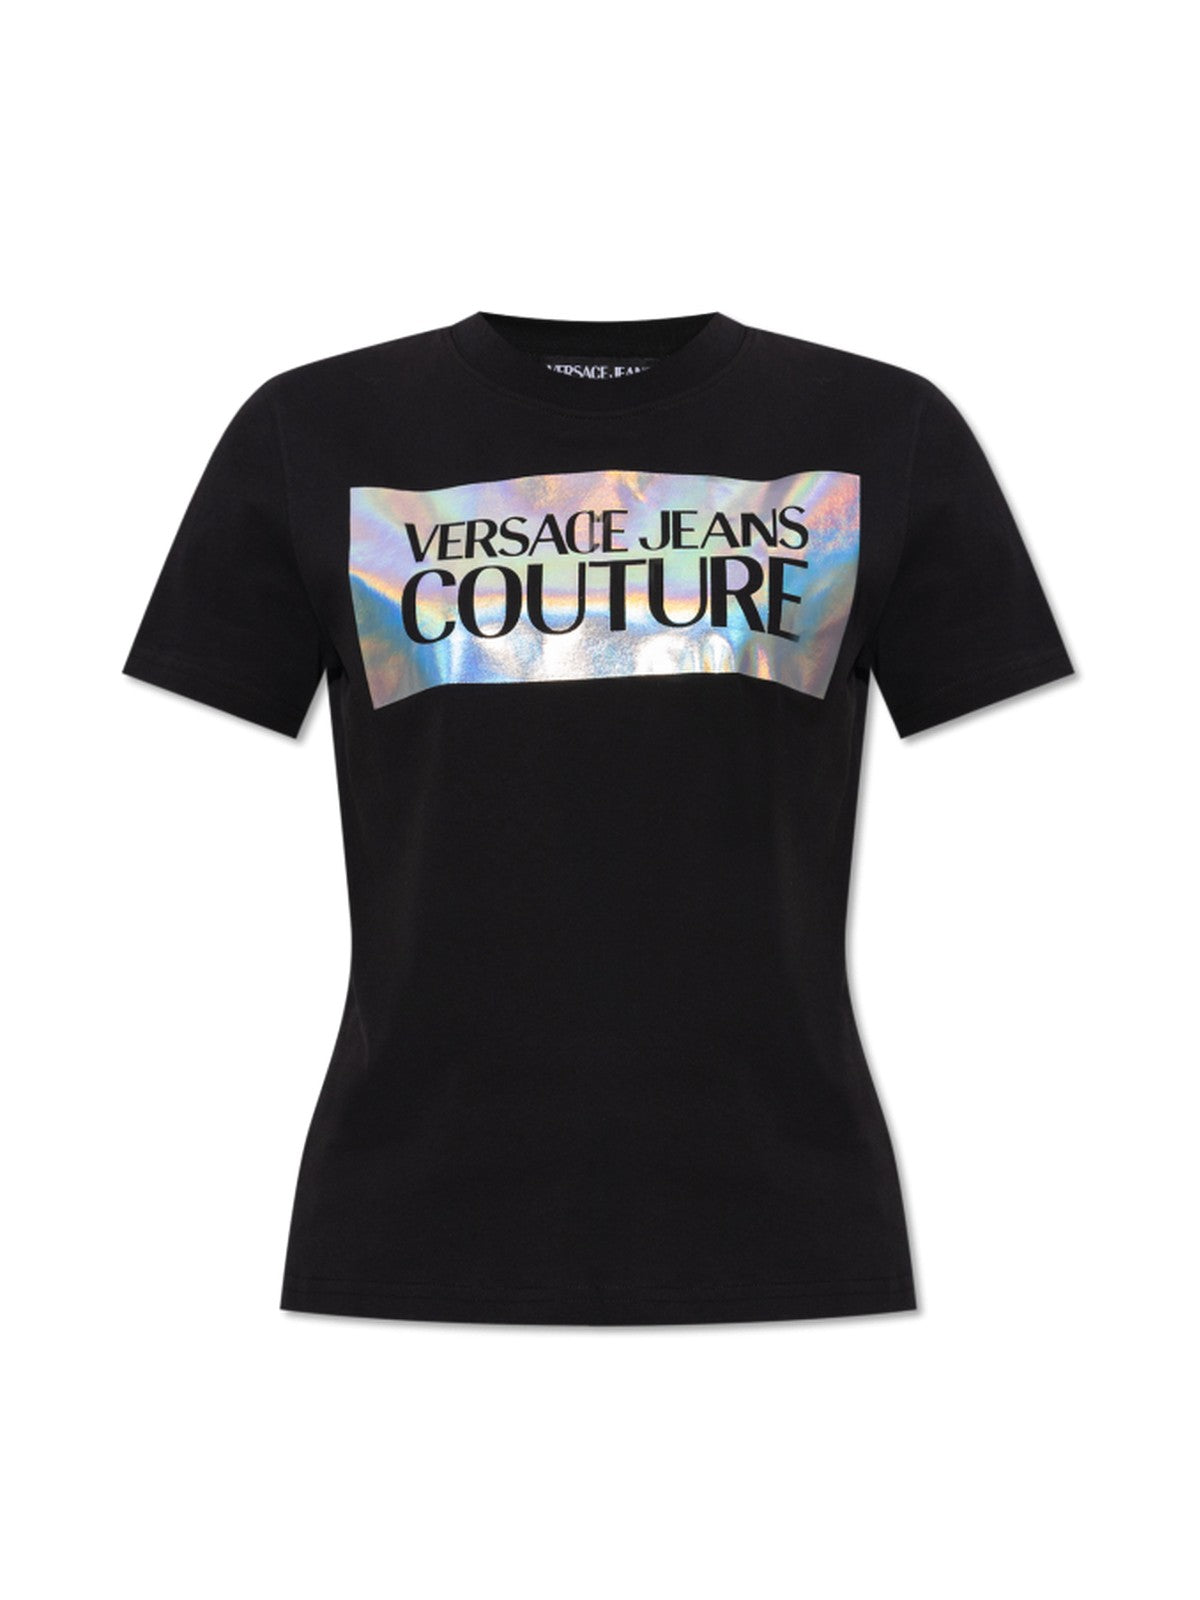 VERSACE JEANS COUTURE T-Shirt et Polo Femme 75HAHF04 CJ03F 899 Noir